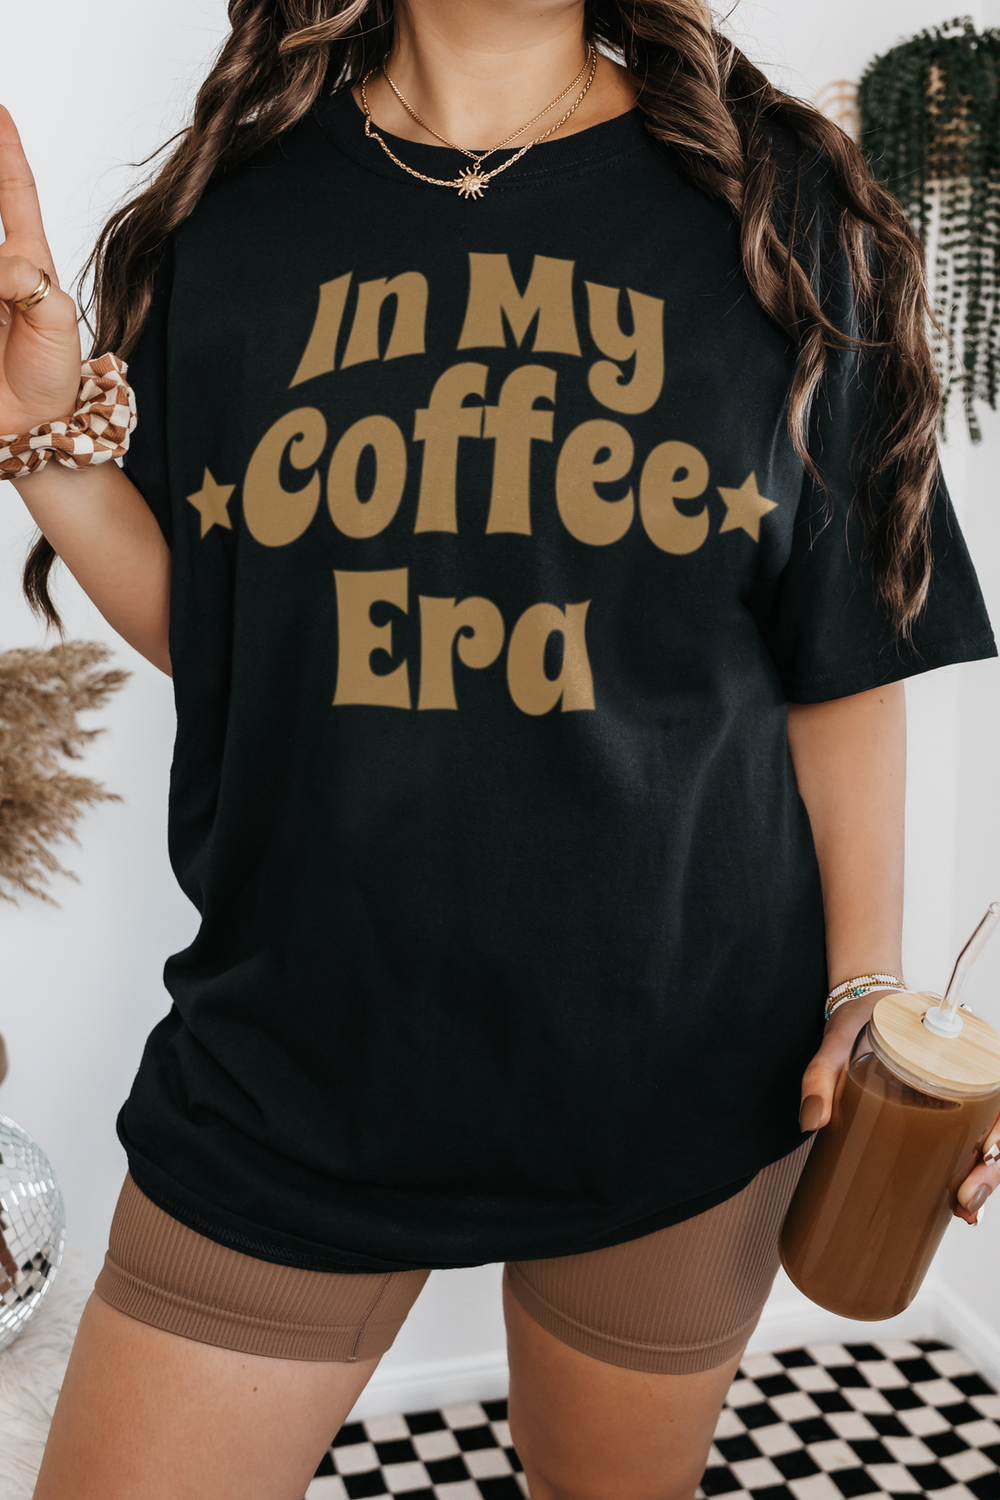 In My Coffee Era Women's Casual T-Shirt